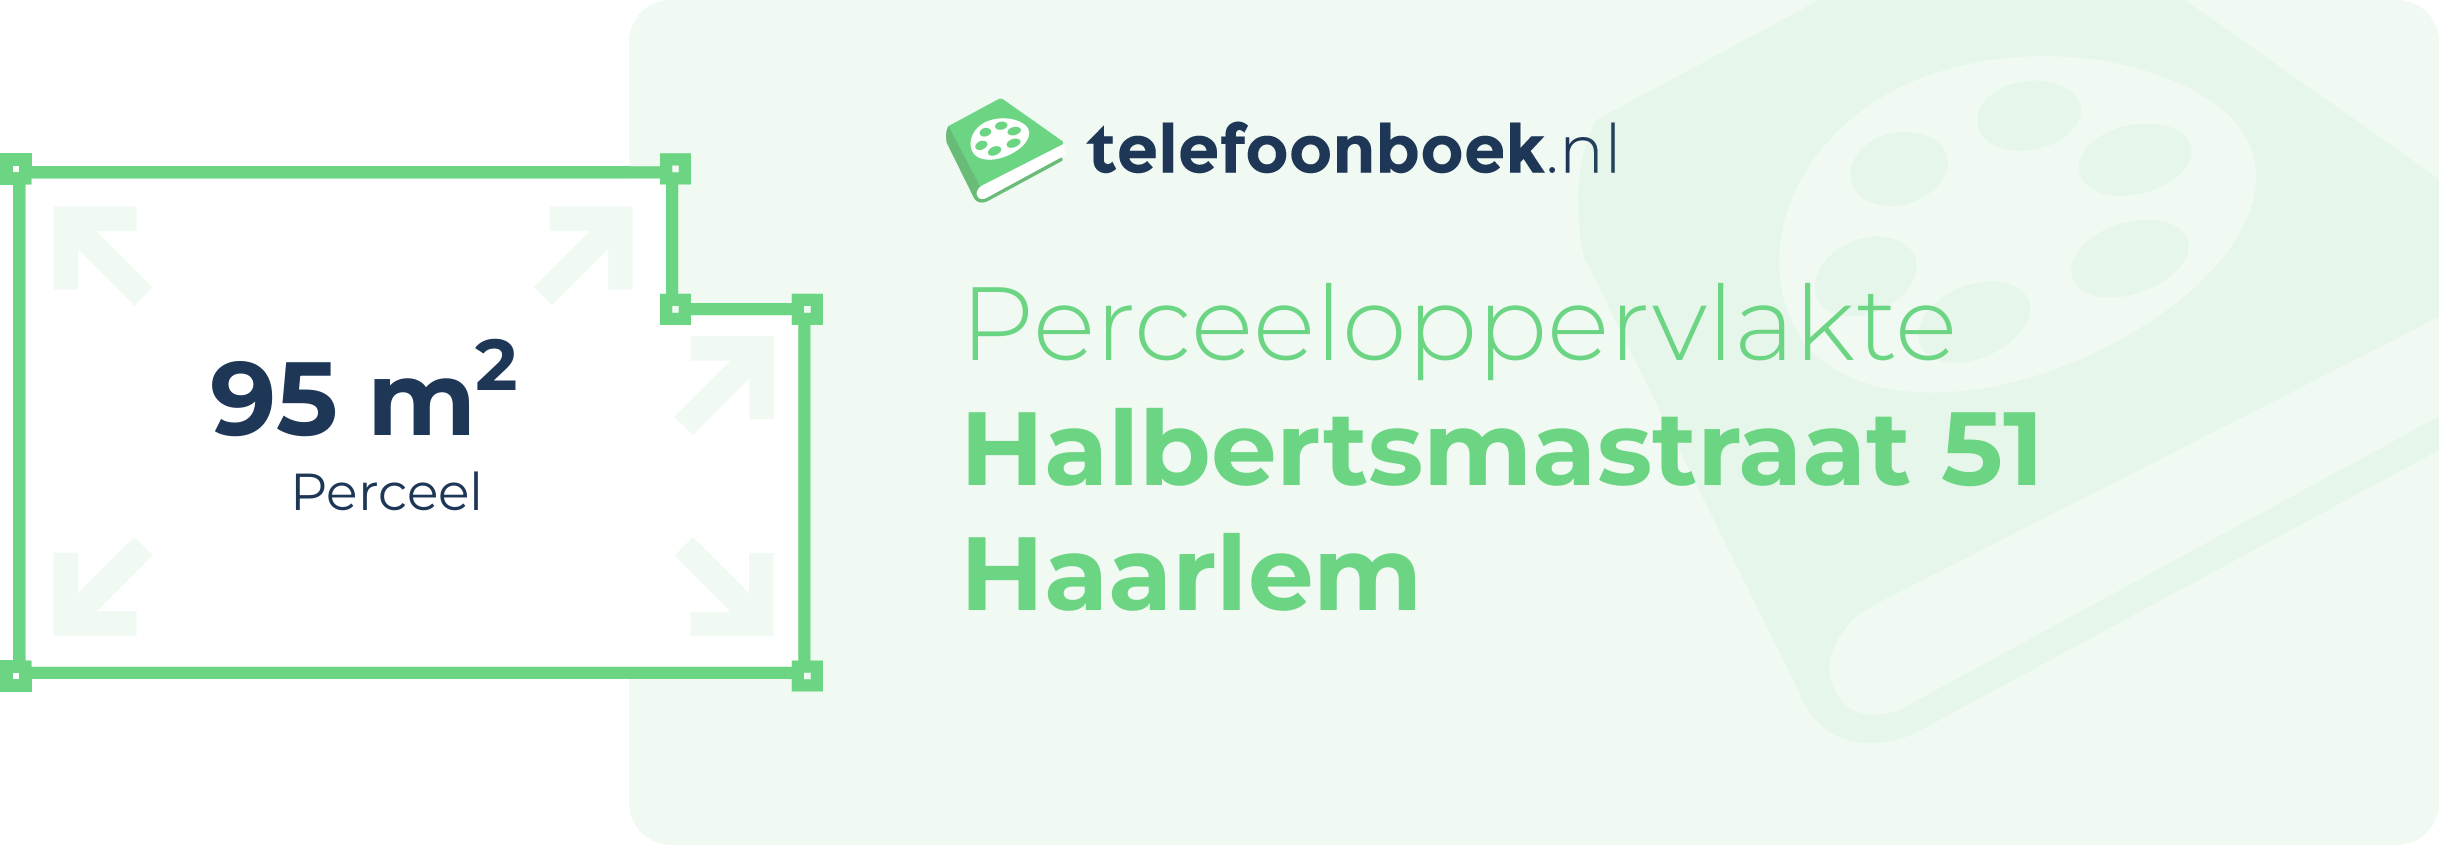 Perceeloppervlakte Halbertsmastraat 51 Haarlem